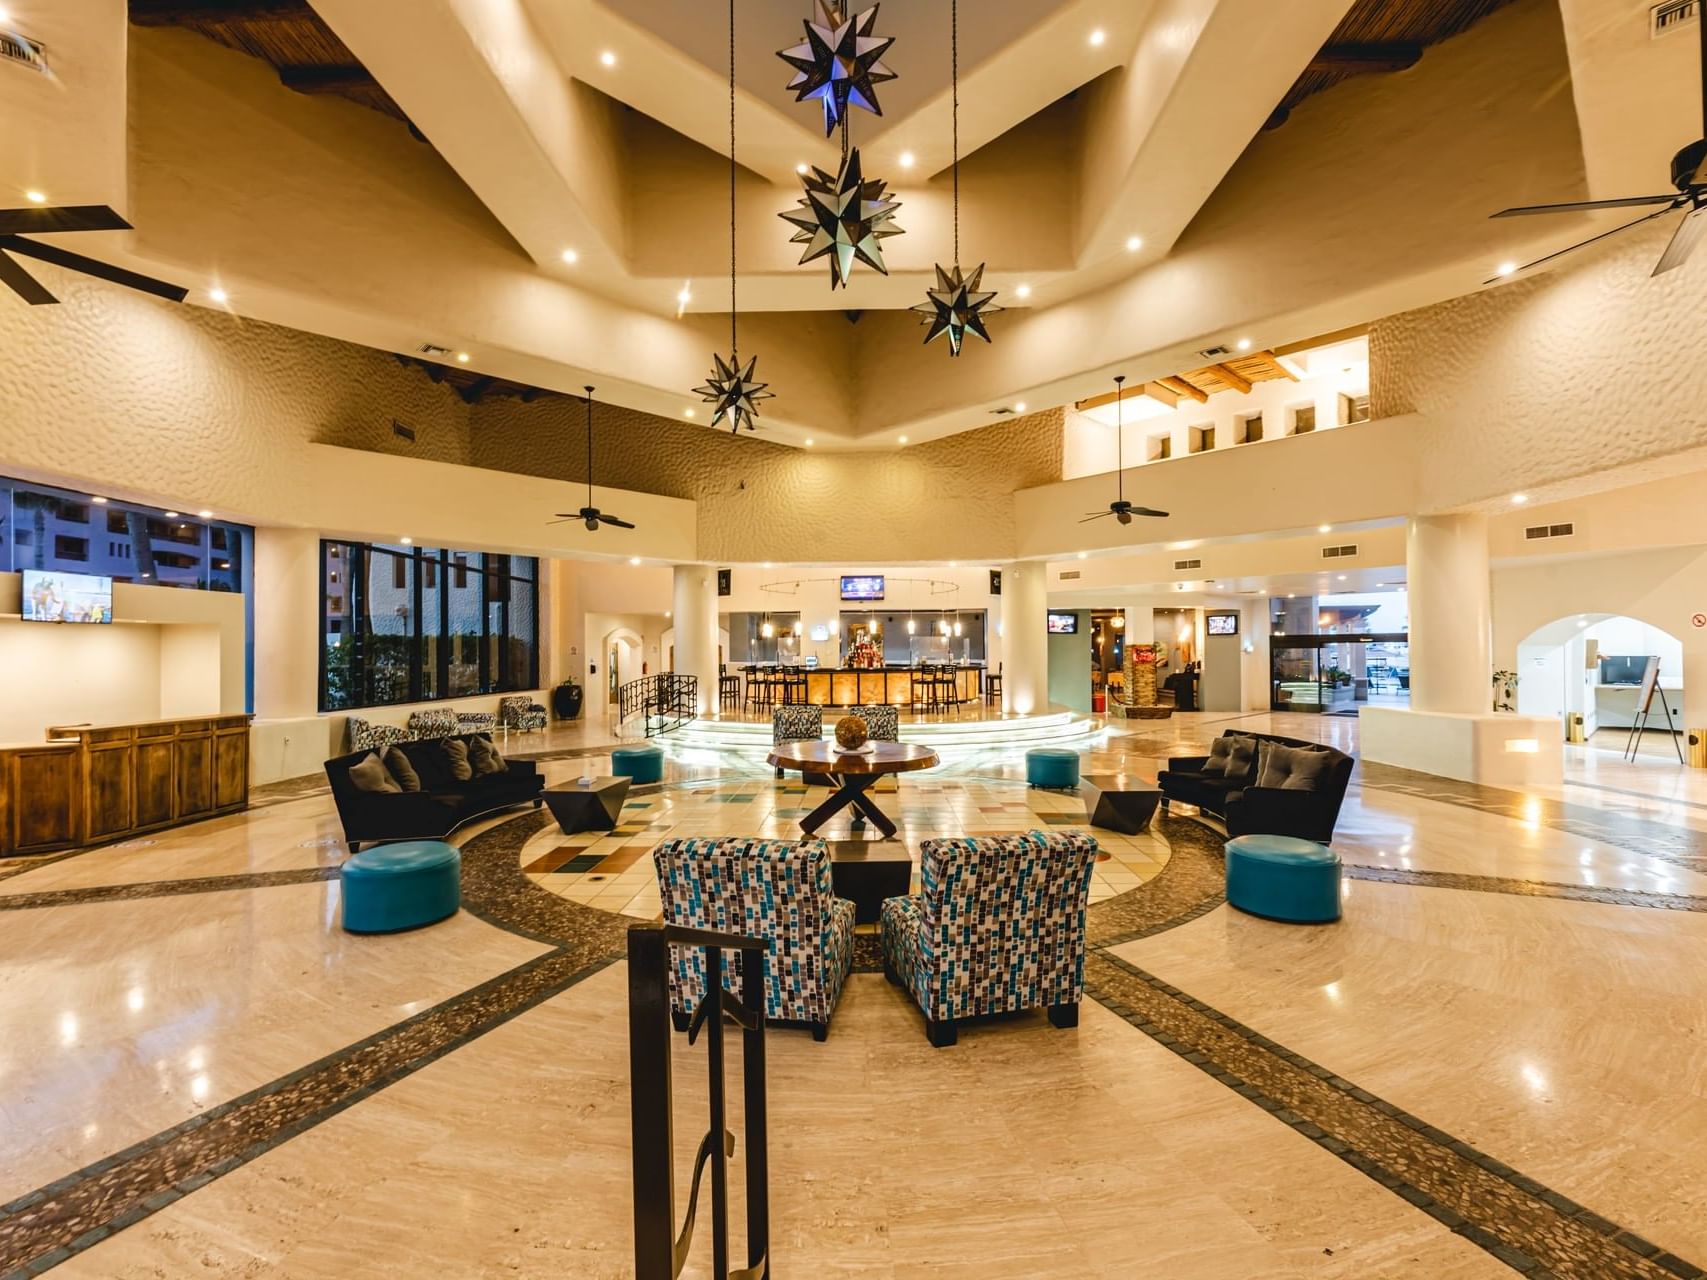 Grand Lobby & lounge area at Peñasco del Sol Hotel